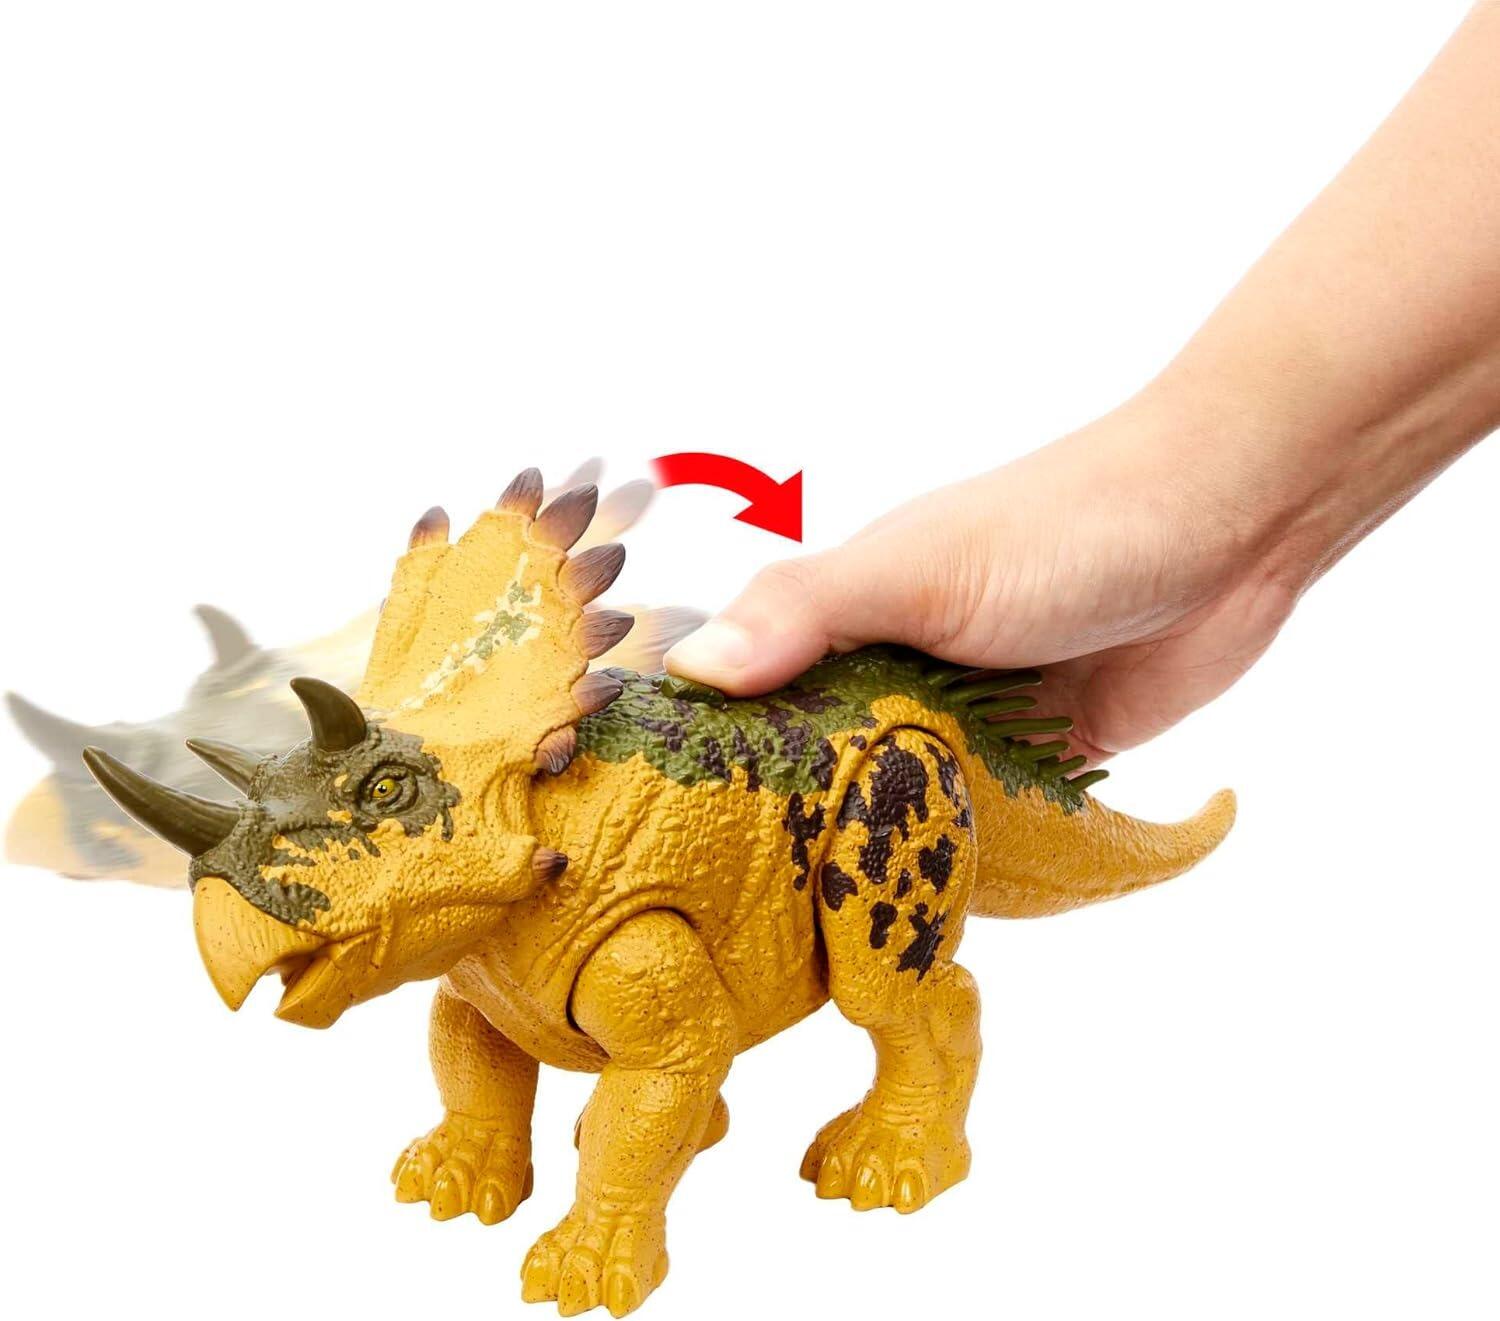 Jurassic World Dino Trackers Wild Roar Regaliceratops